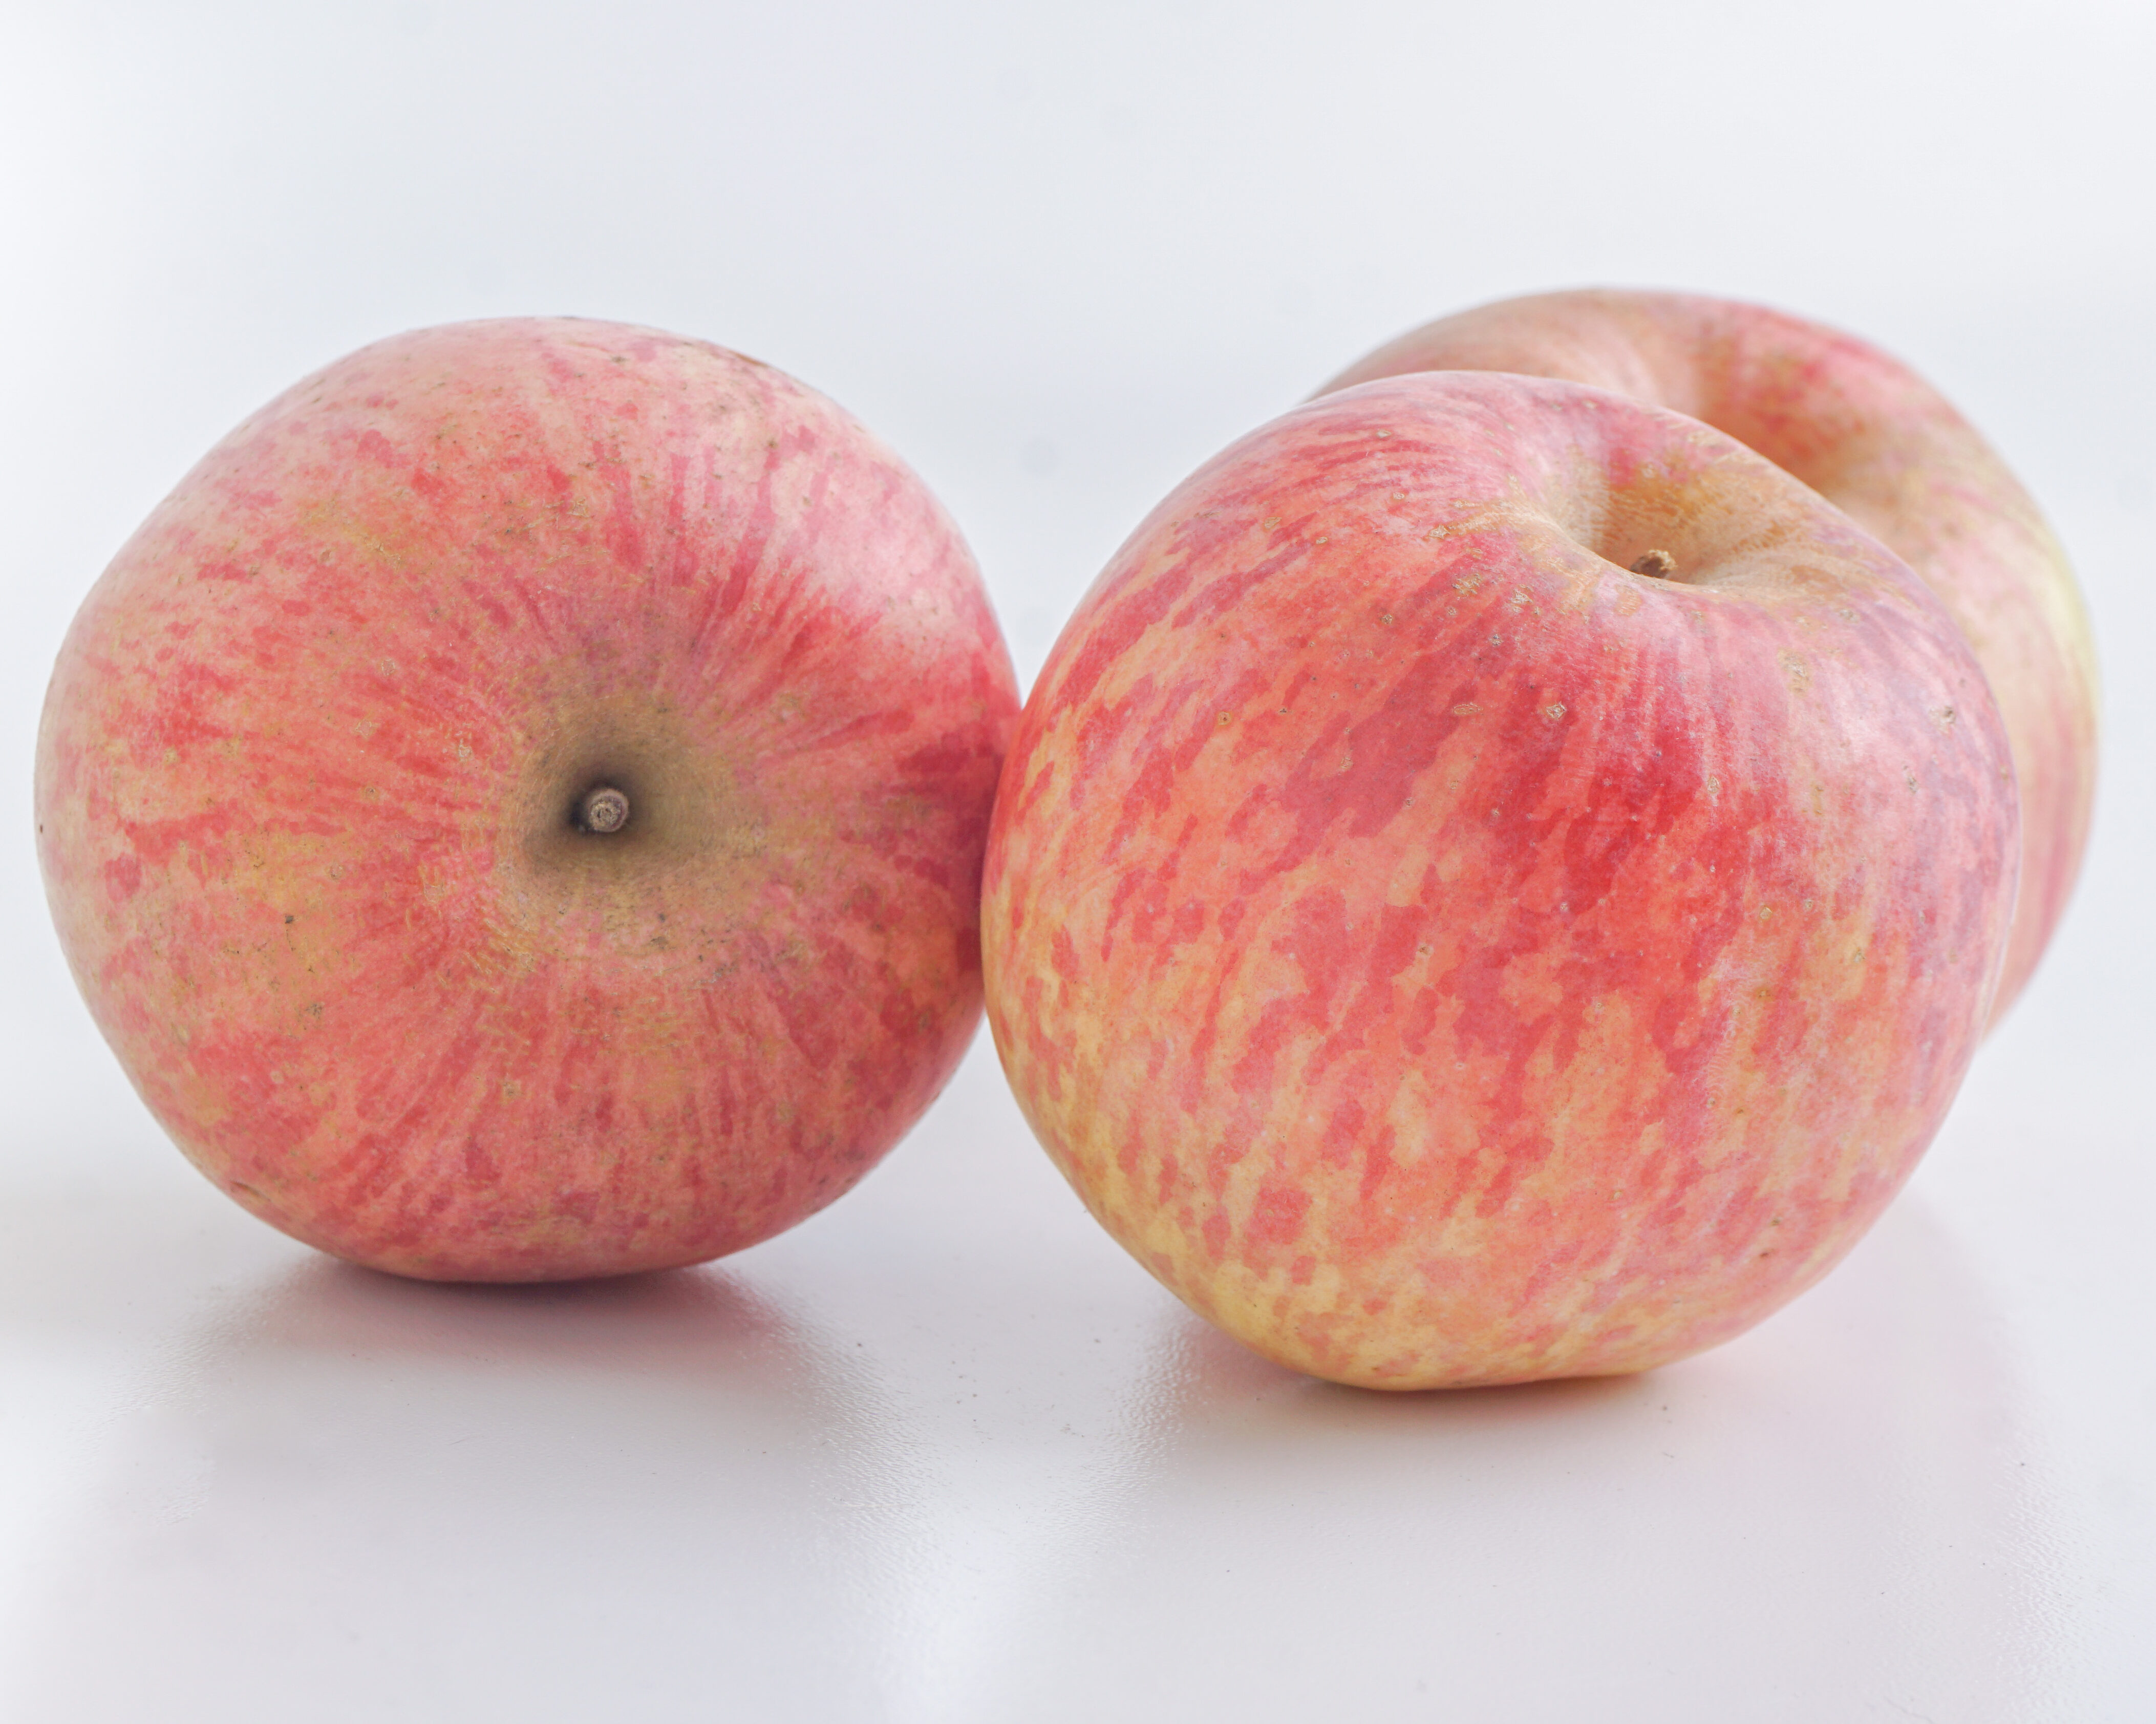 Fresh Apples - Various Varieties - Product